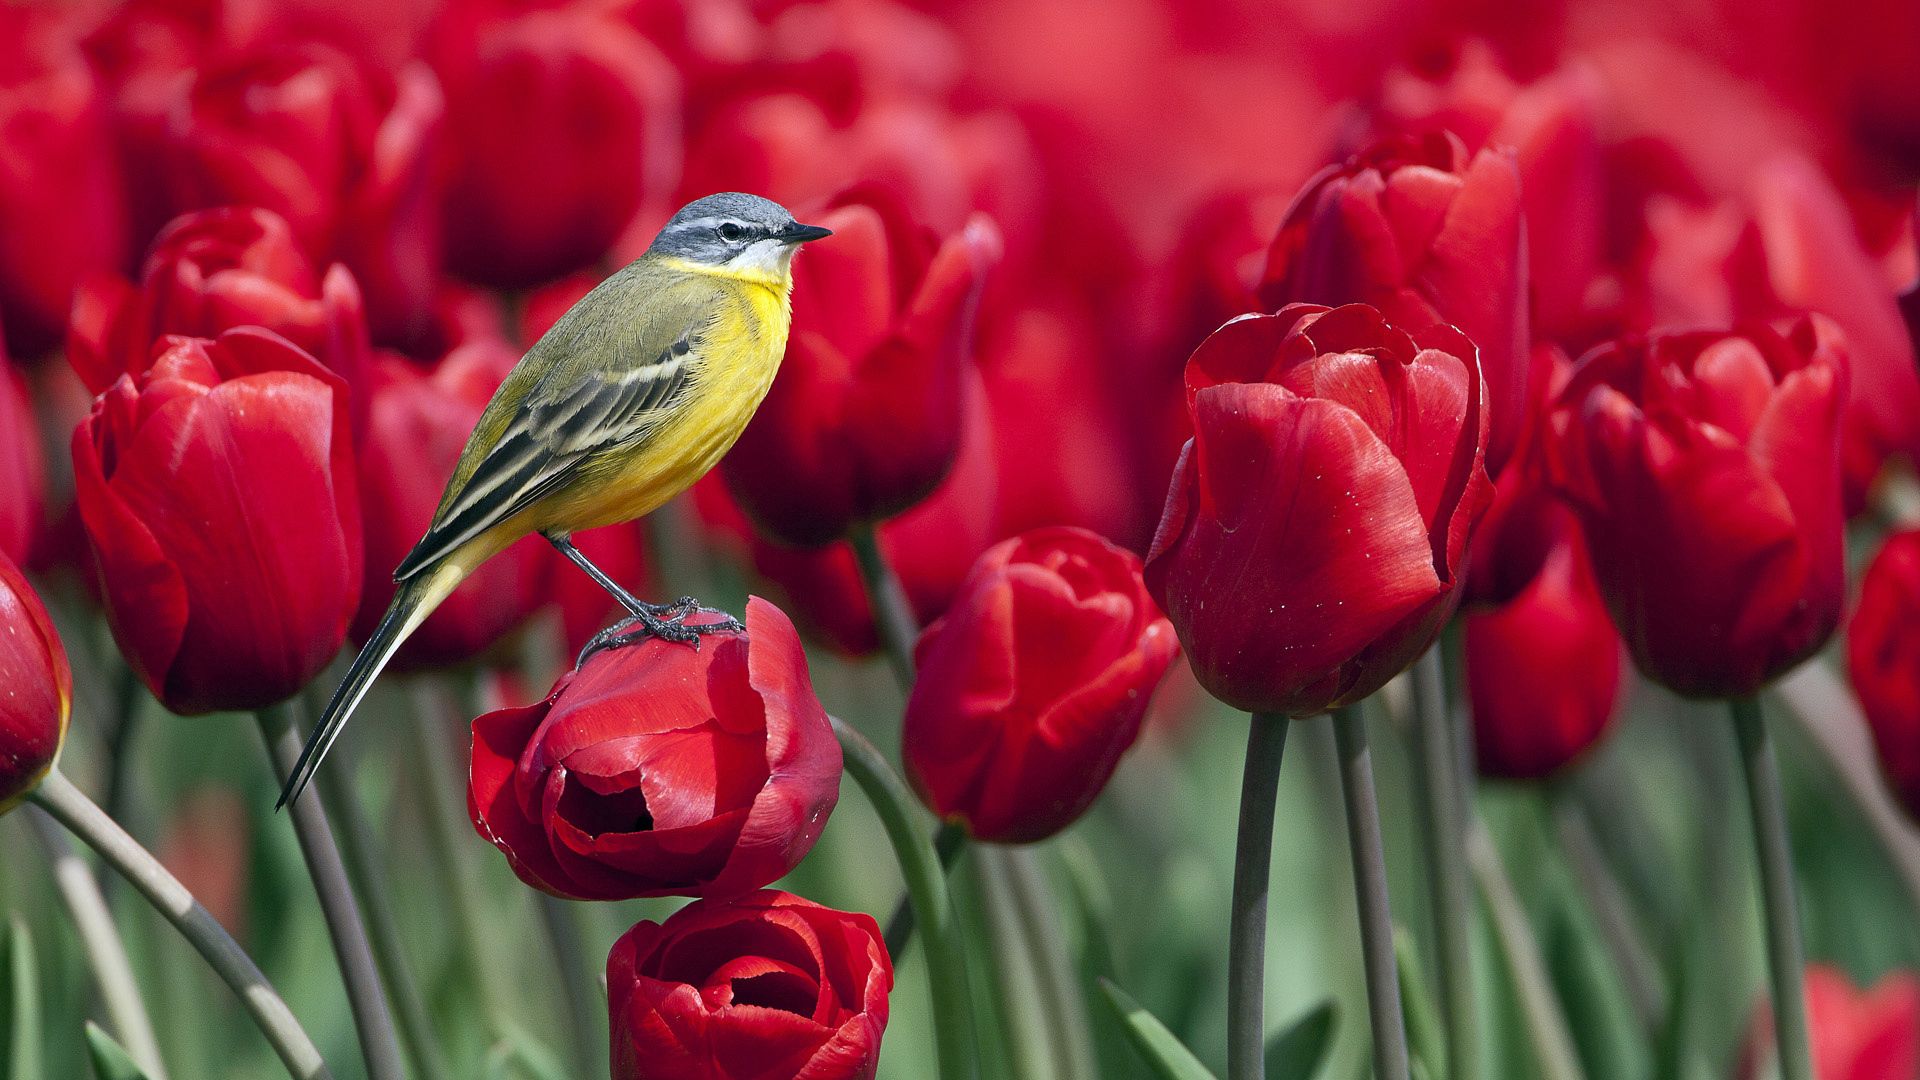 Descarga gratuita de fondo de pantalla para móvil de Animales, Flores, Pájaro, Tulipanes.